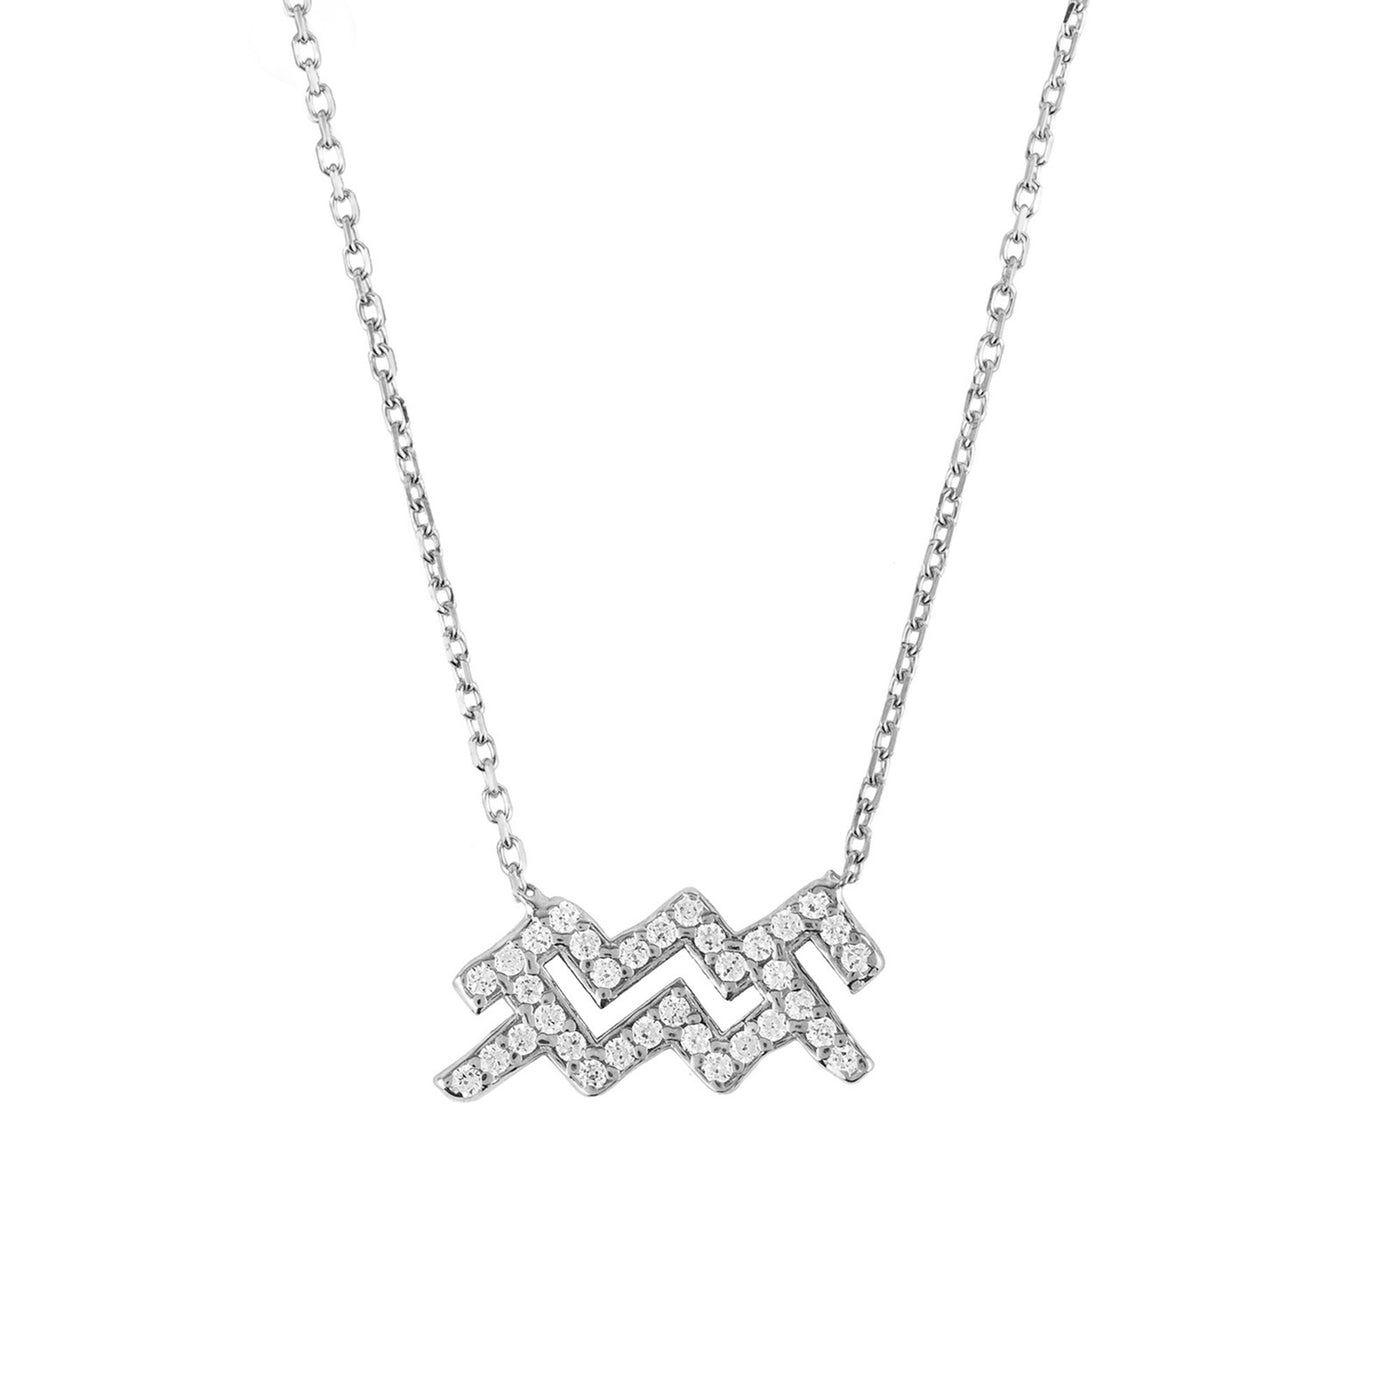 Aquarius - Necklace - 925 Sterling Silver - Zirconias